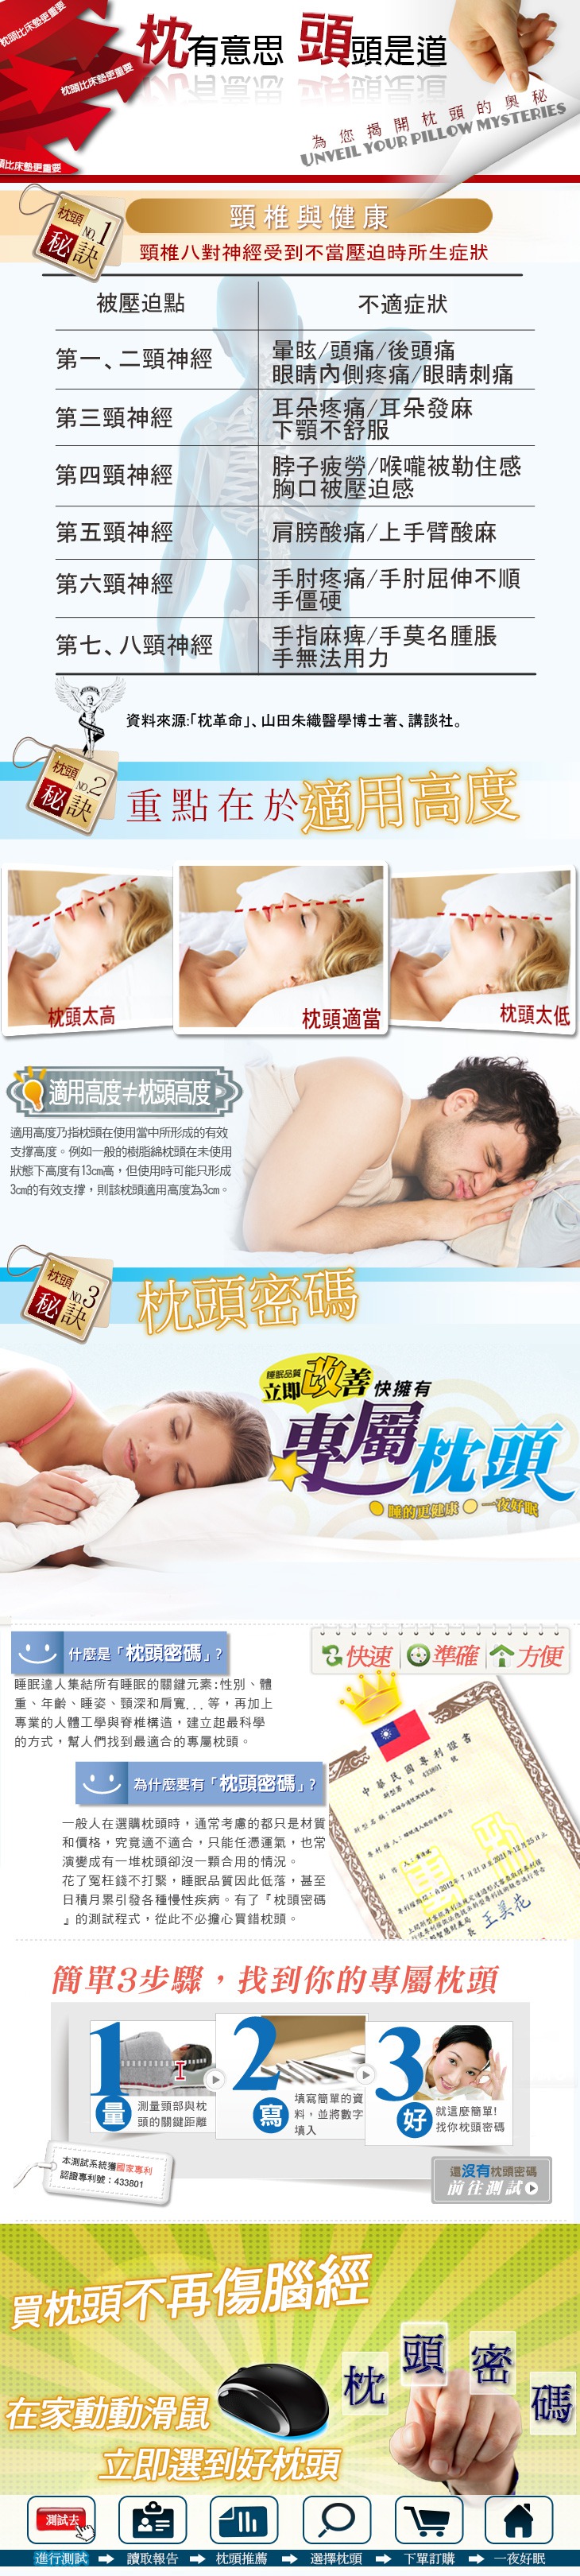 如何挑選枕頭 枕頭密碼 失眠 睡不好 肩頸僵硬 手指麻痺 睡眠達人 頭痛頭暈